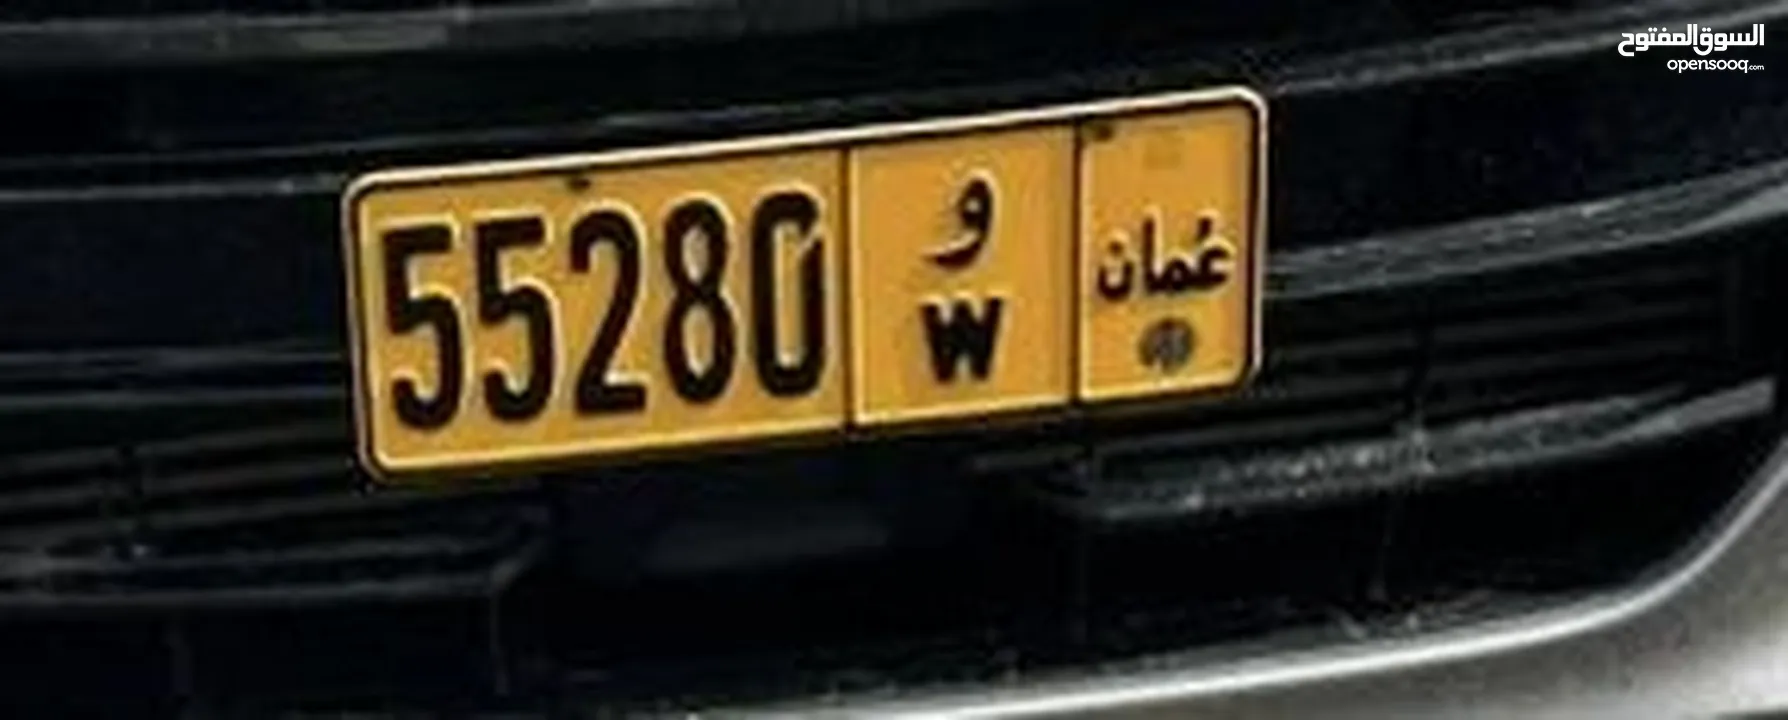 رقم سيارة للبيع